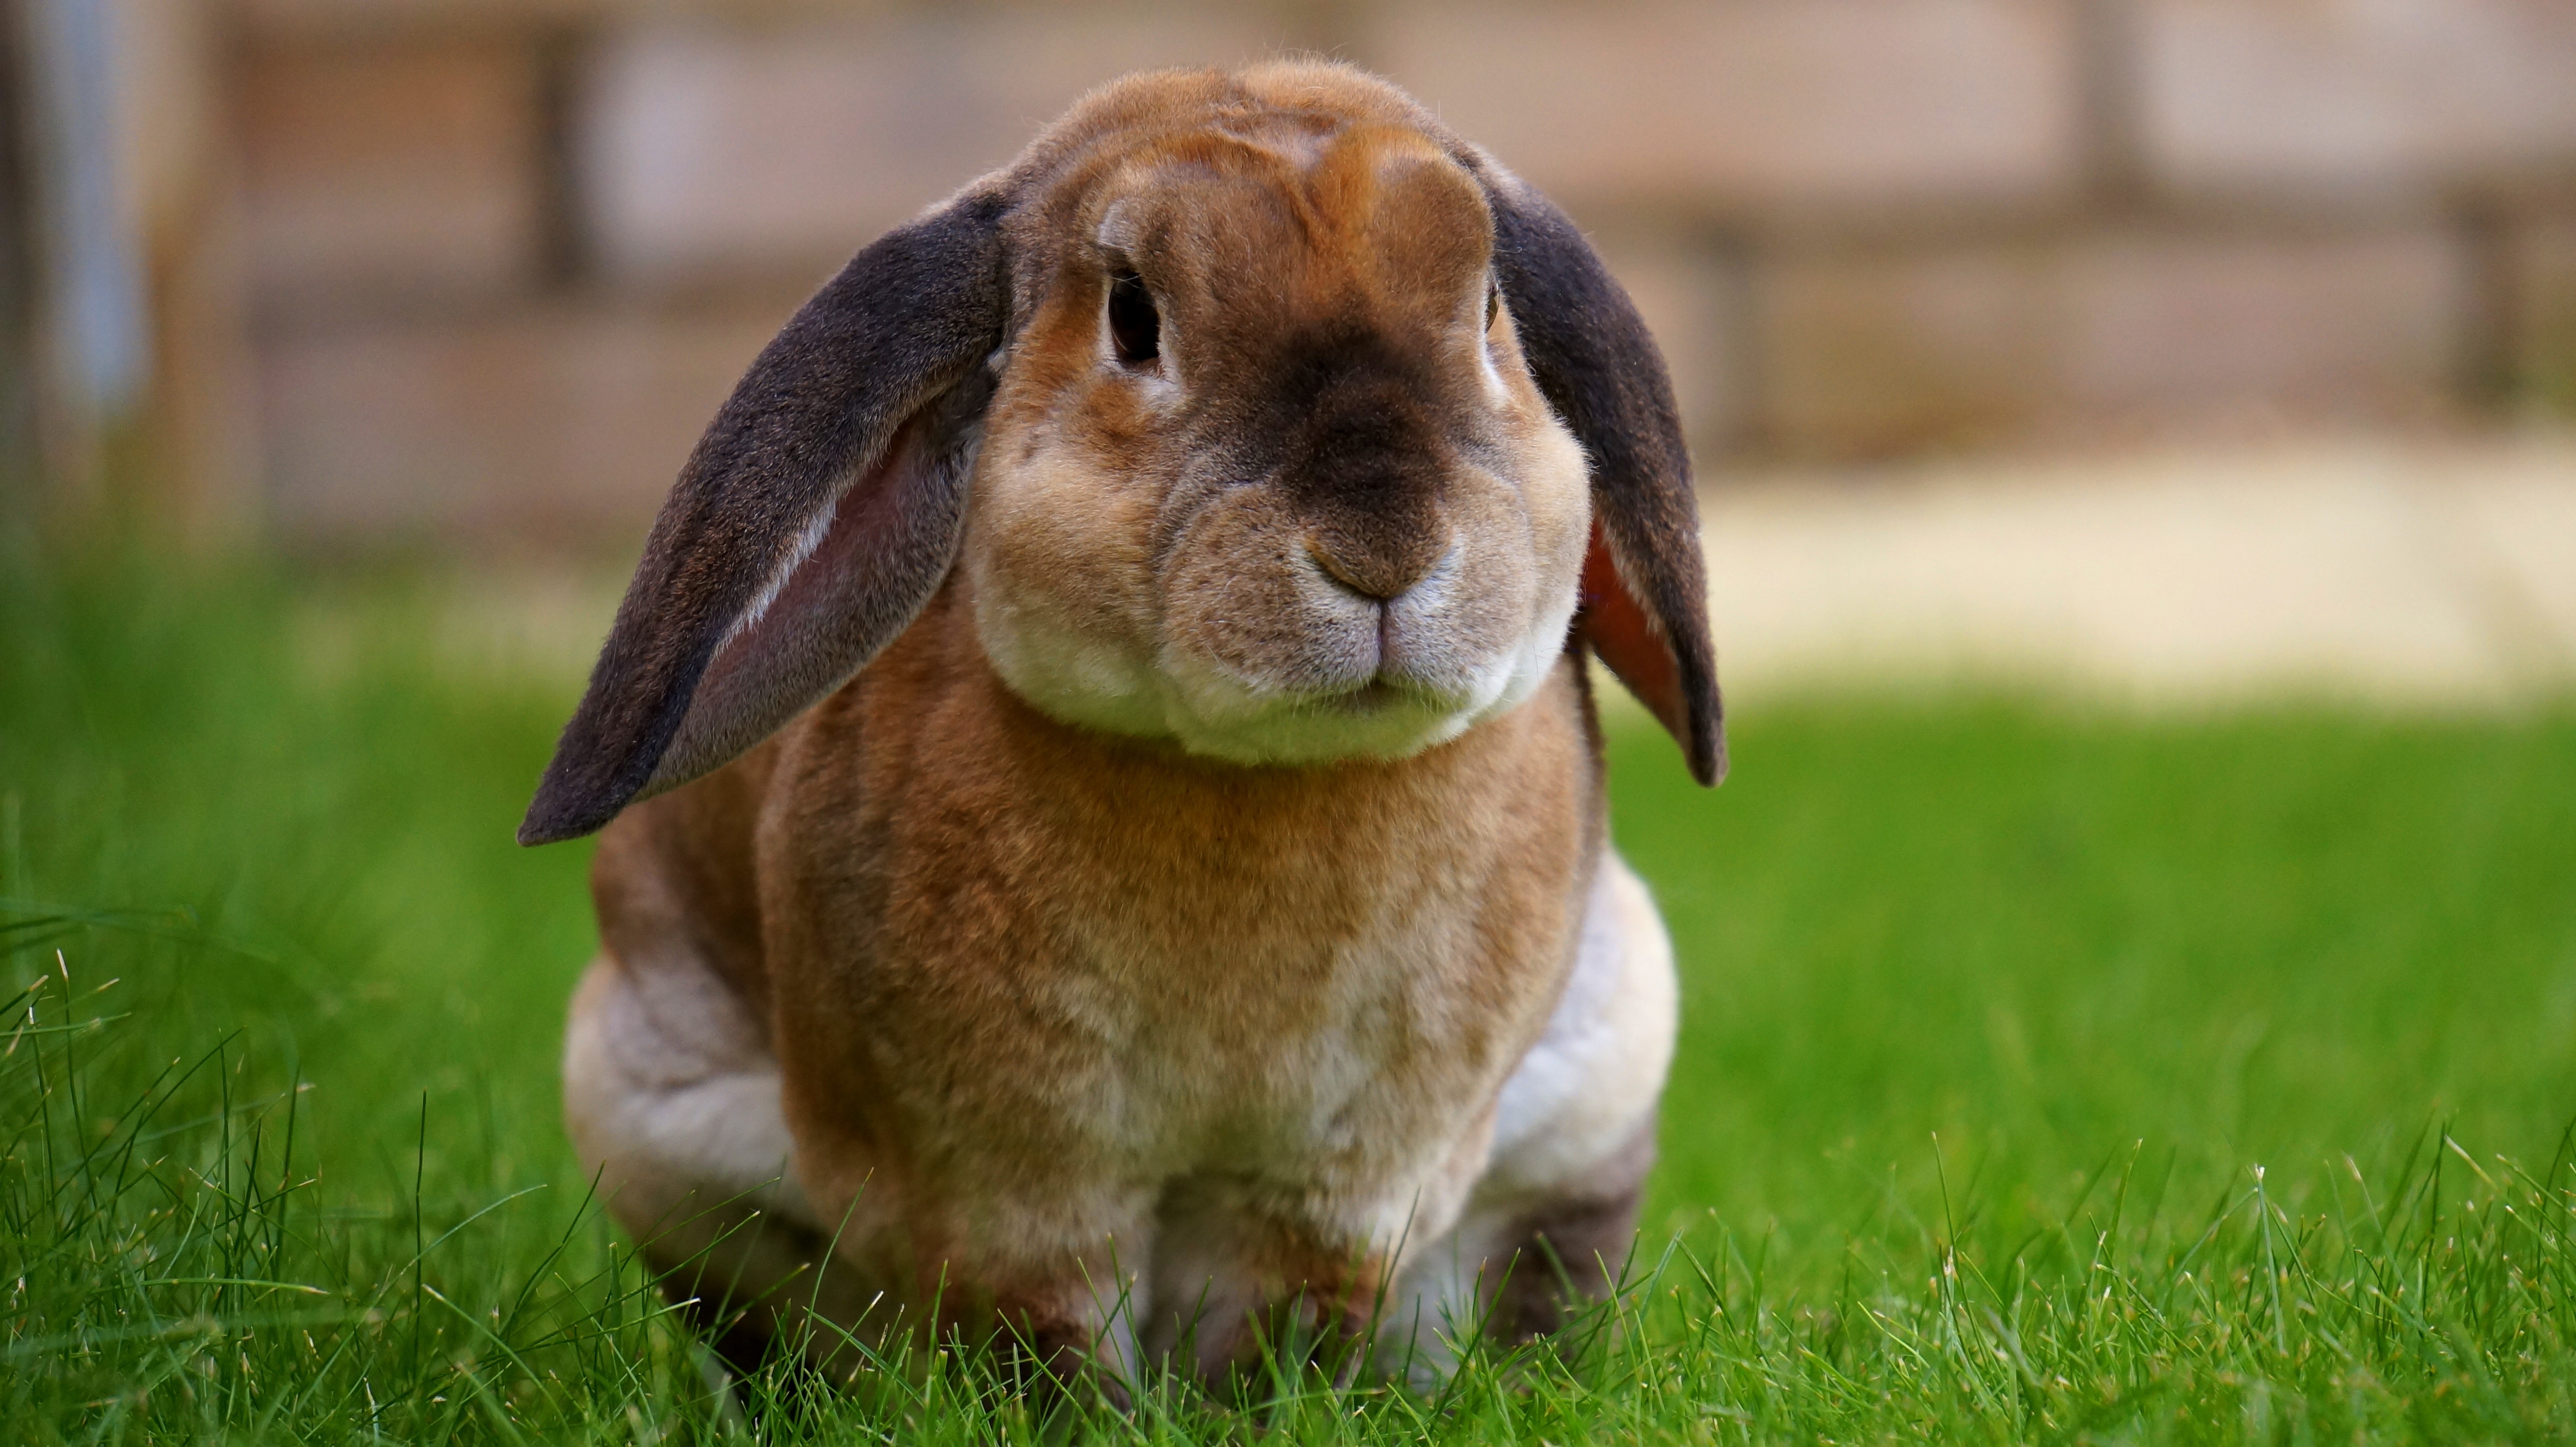 A rabbit on green grass